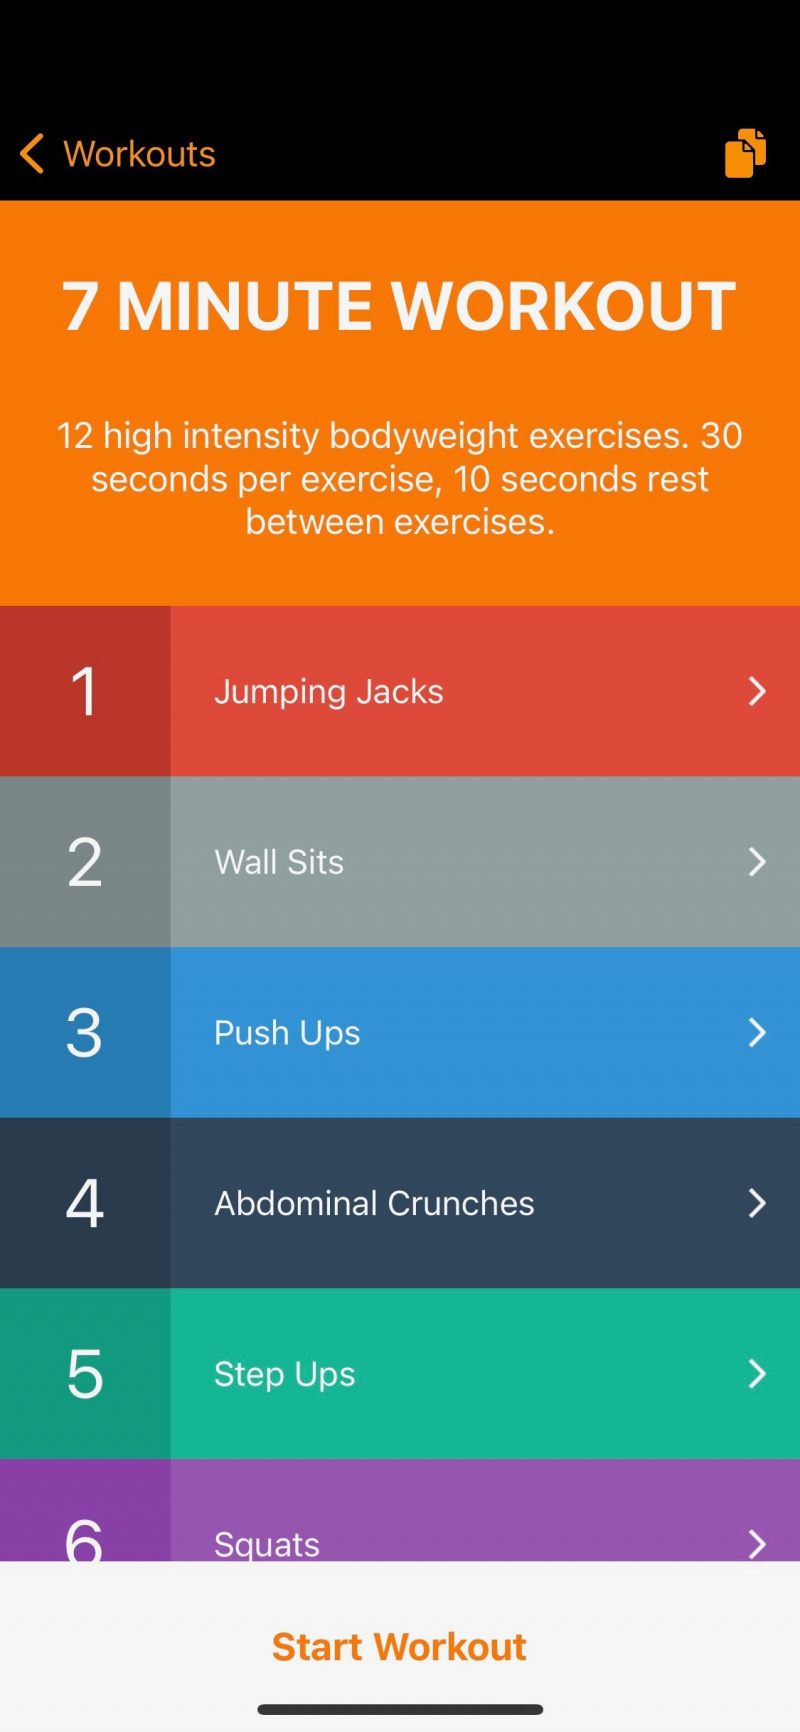   Snímka obrazovky aplikácie 7 Minute Workout zobrazujúca cvičenia v rámci tréningu